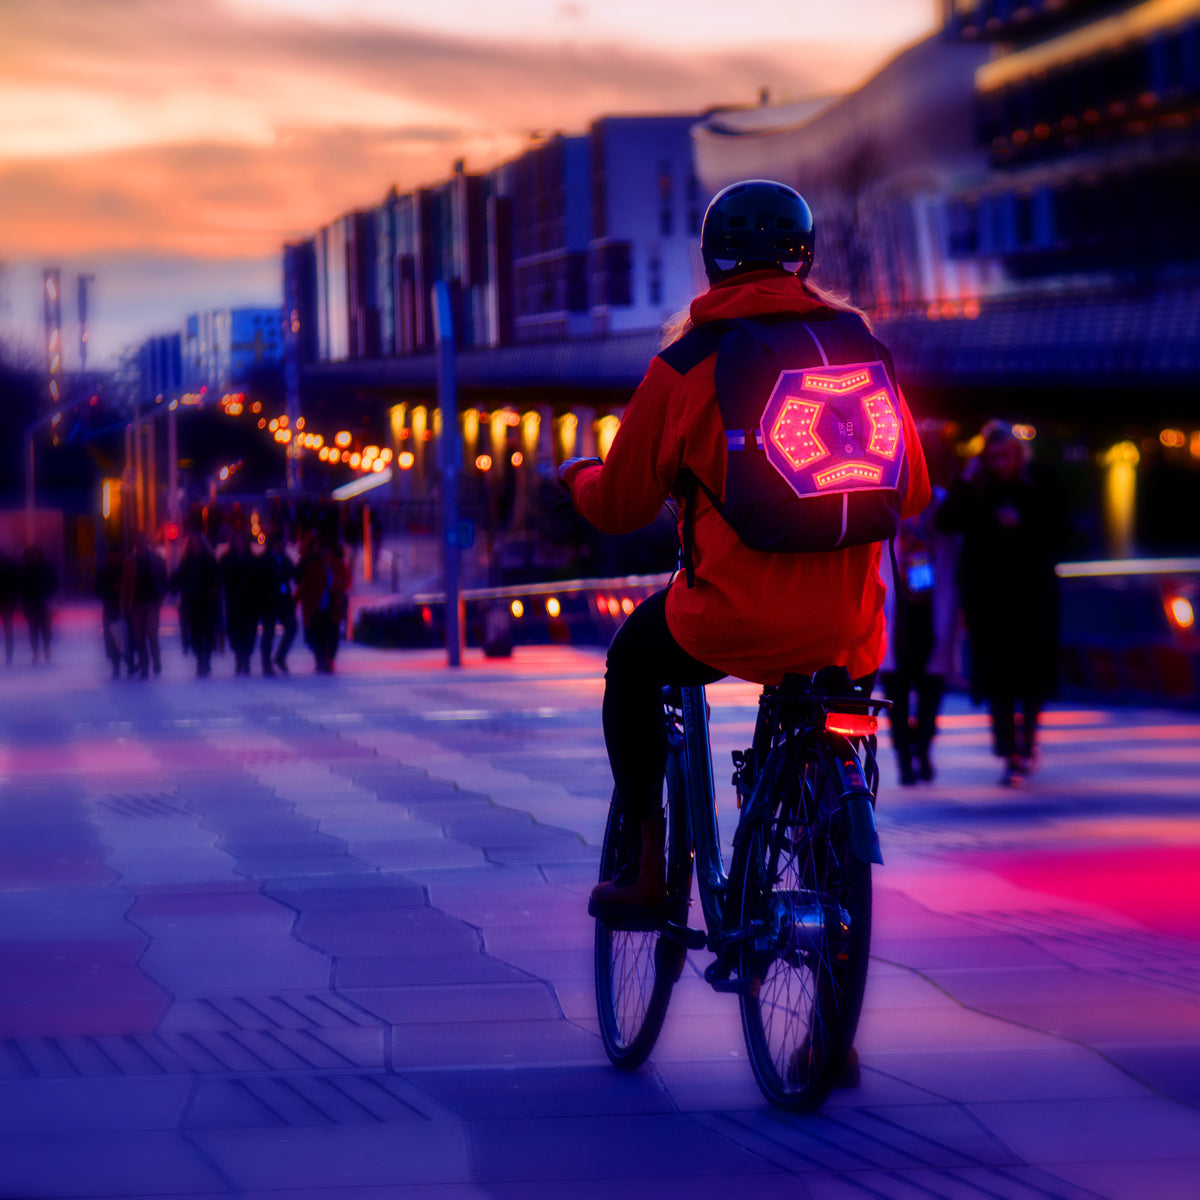 Cycliste avec accessoire lumineux clignotant